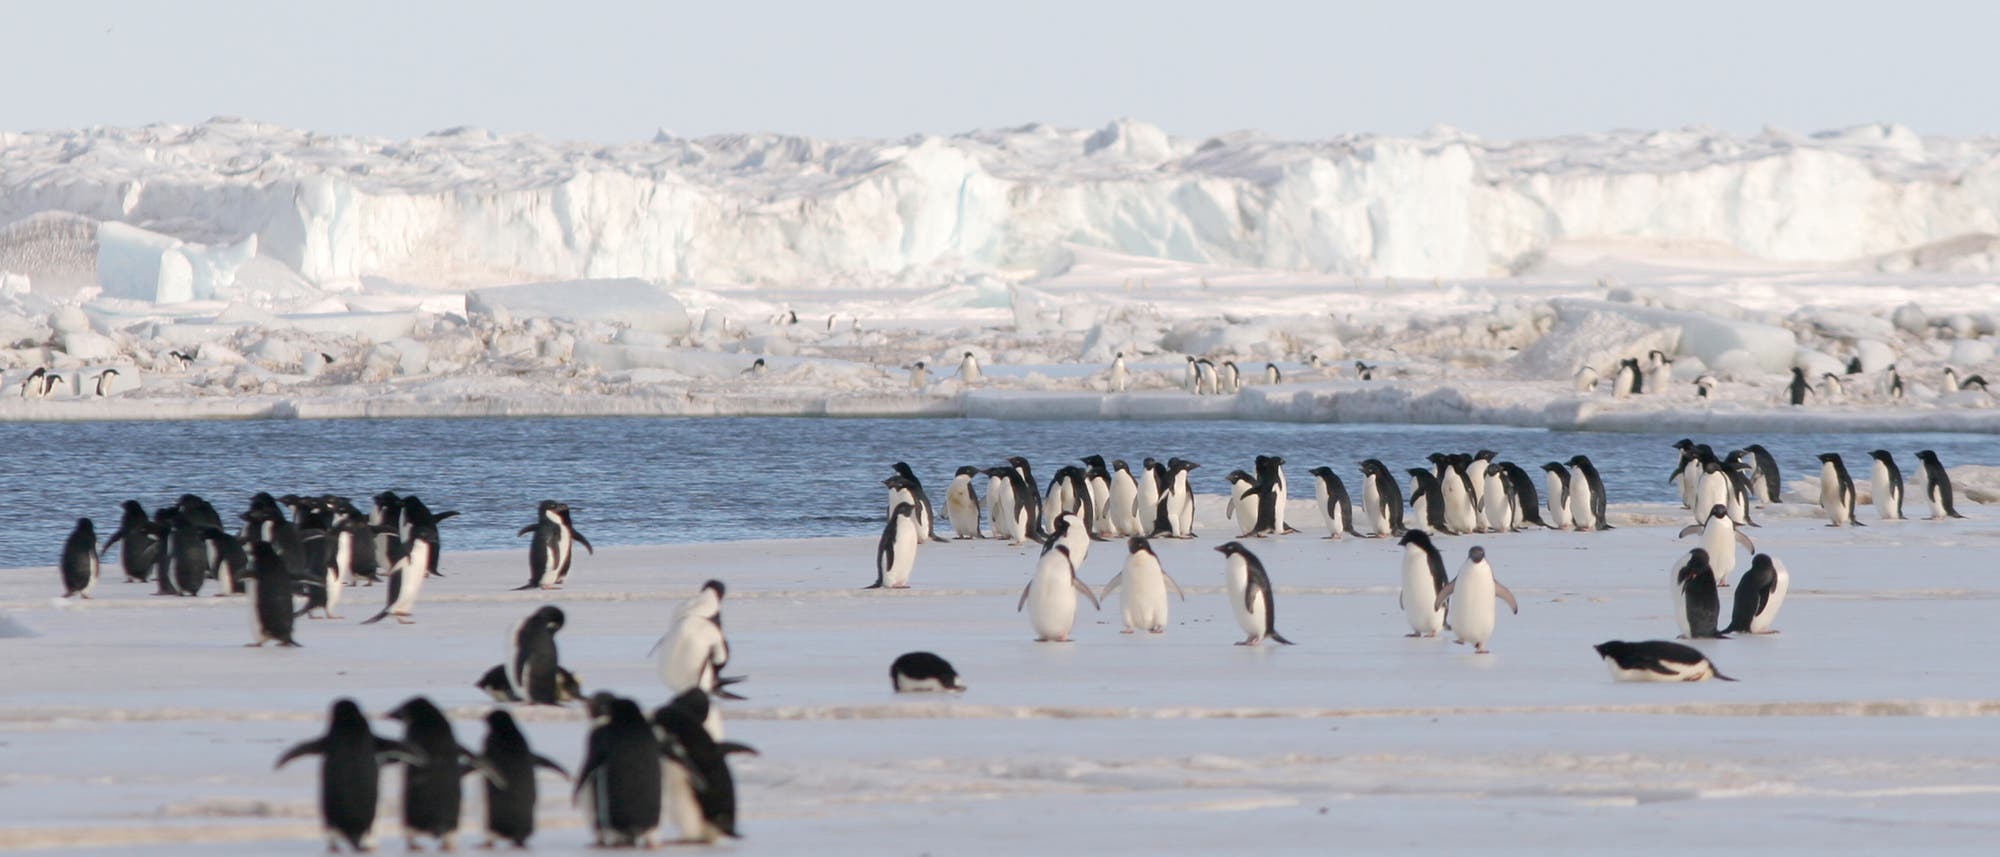 Pinguine stehen an der Eiskante des Schelfeises in der Antarktis